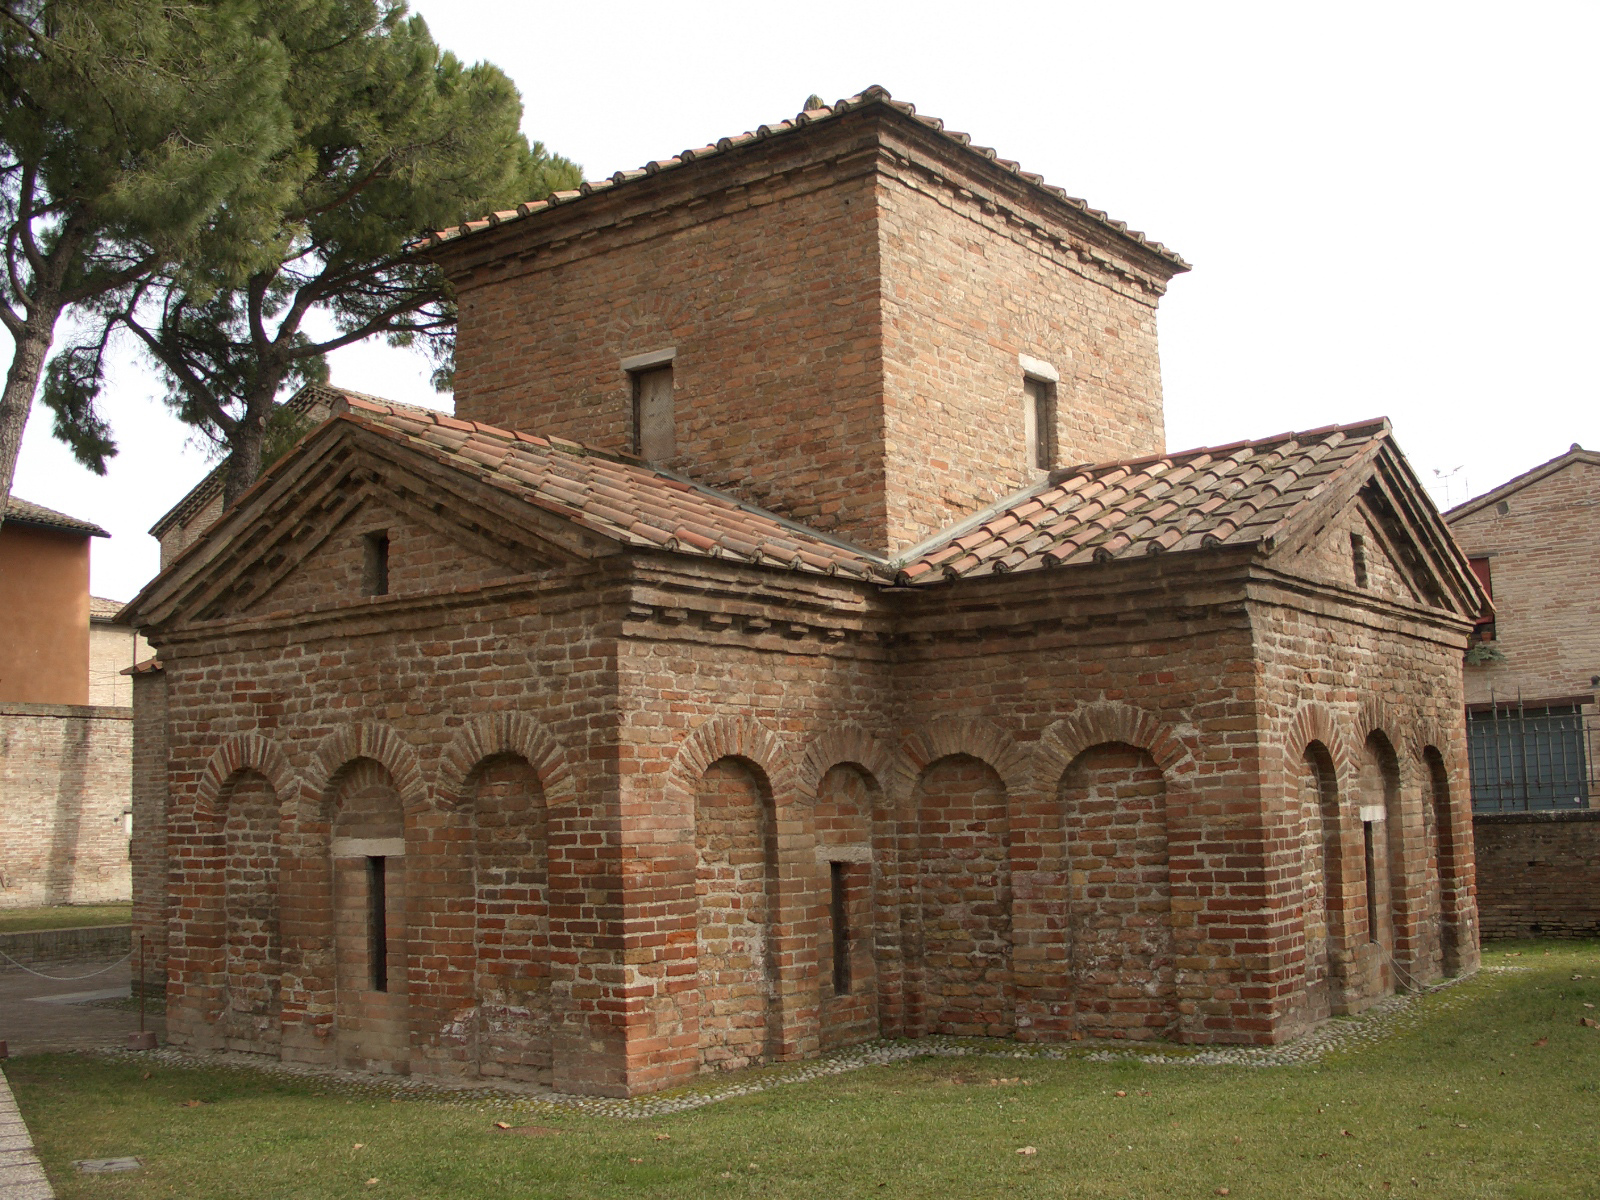 Il mausoleo di Galla Placidia a Ravenna